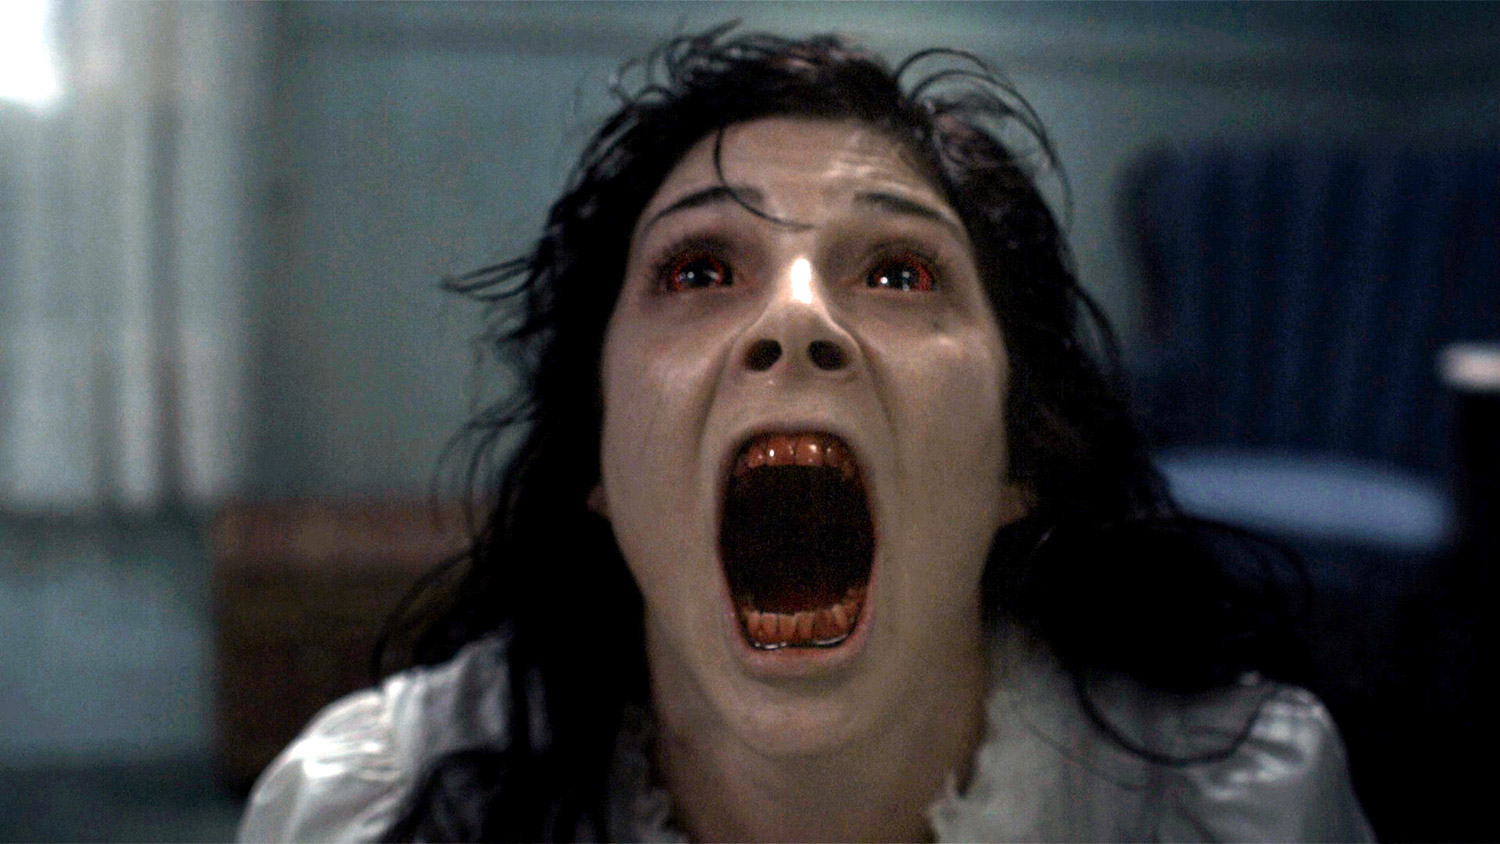 Canadian Horror Films - The Shrine, screaming